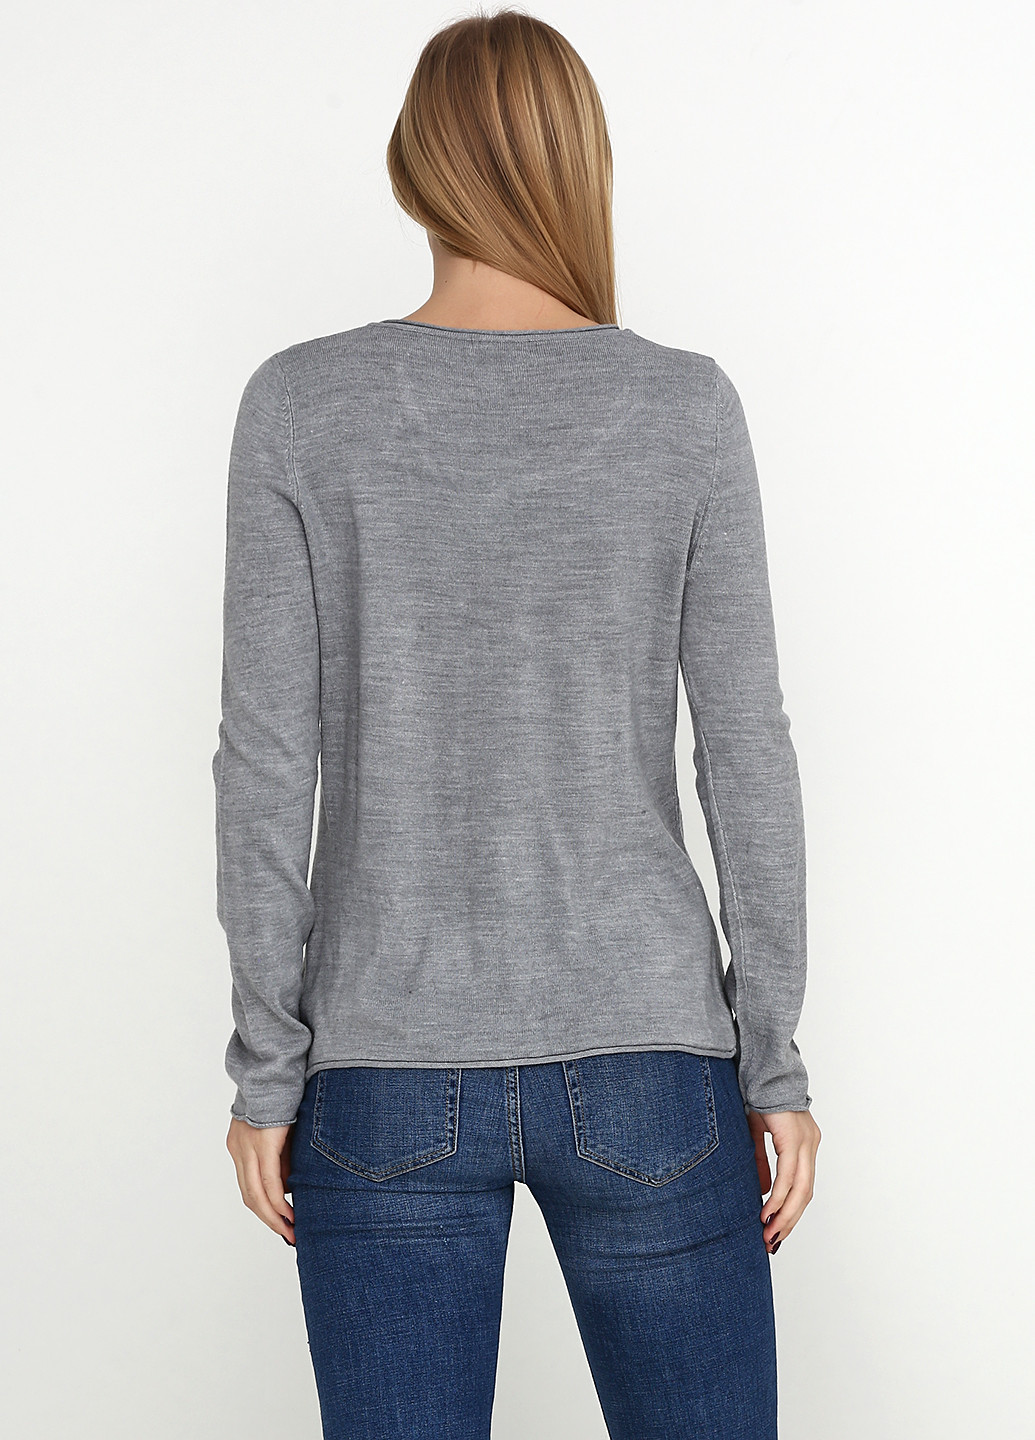 Серый демисезонный пуловер пуловер White Stag